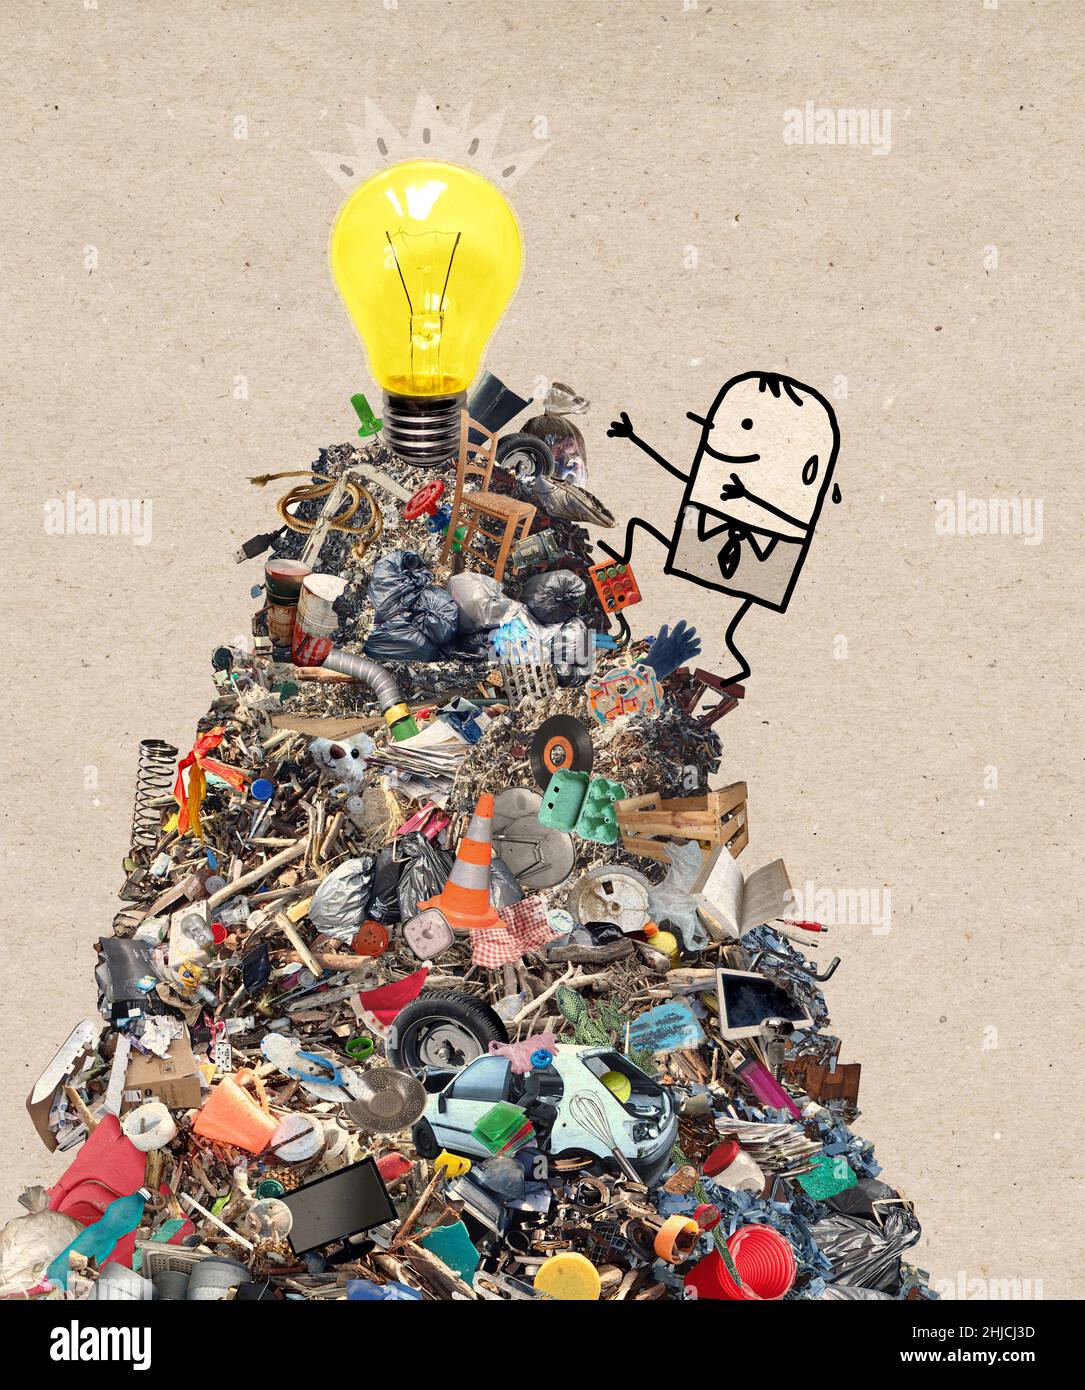 Handgezeichneter Cartoon-Mann klettert einen großen Haufen Müll hoch glücklich, ein Licht zu sehen Stockfoto